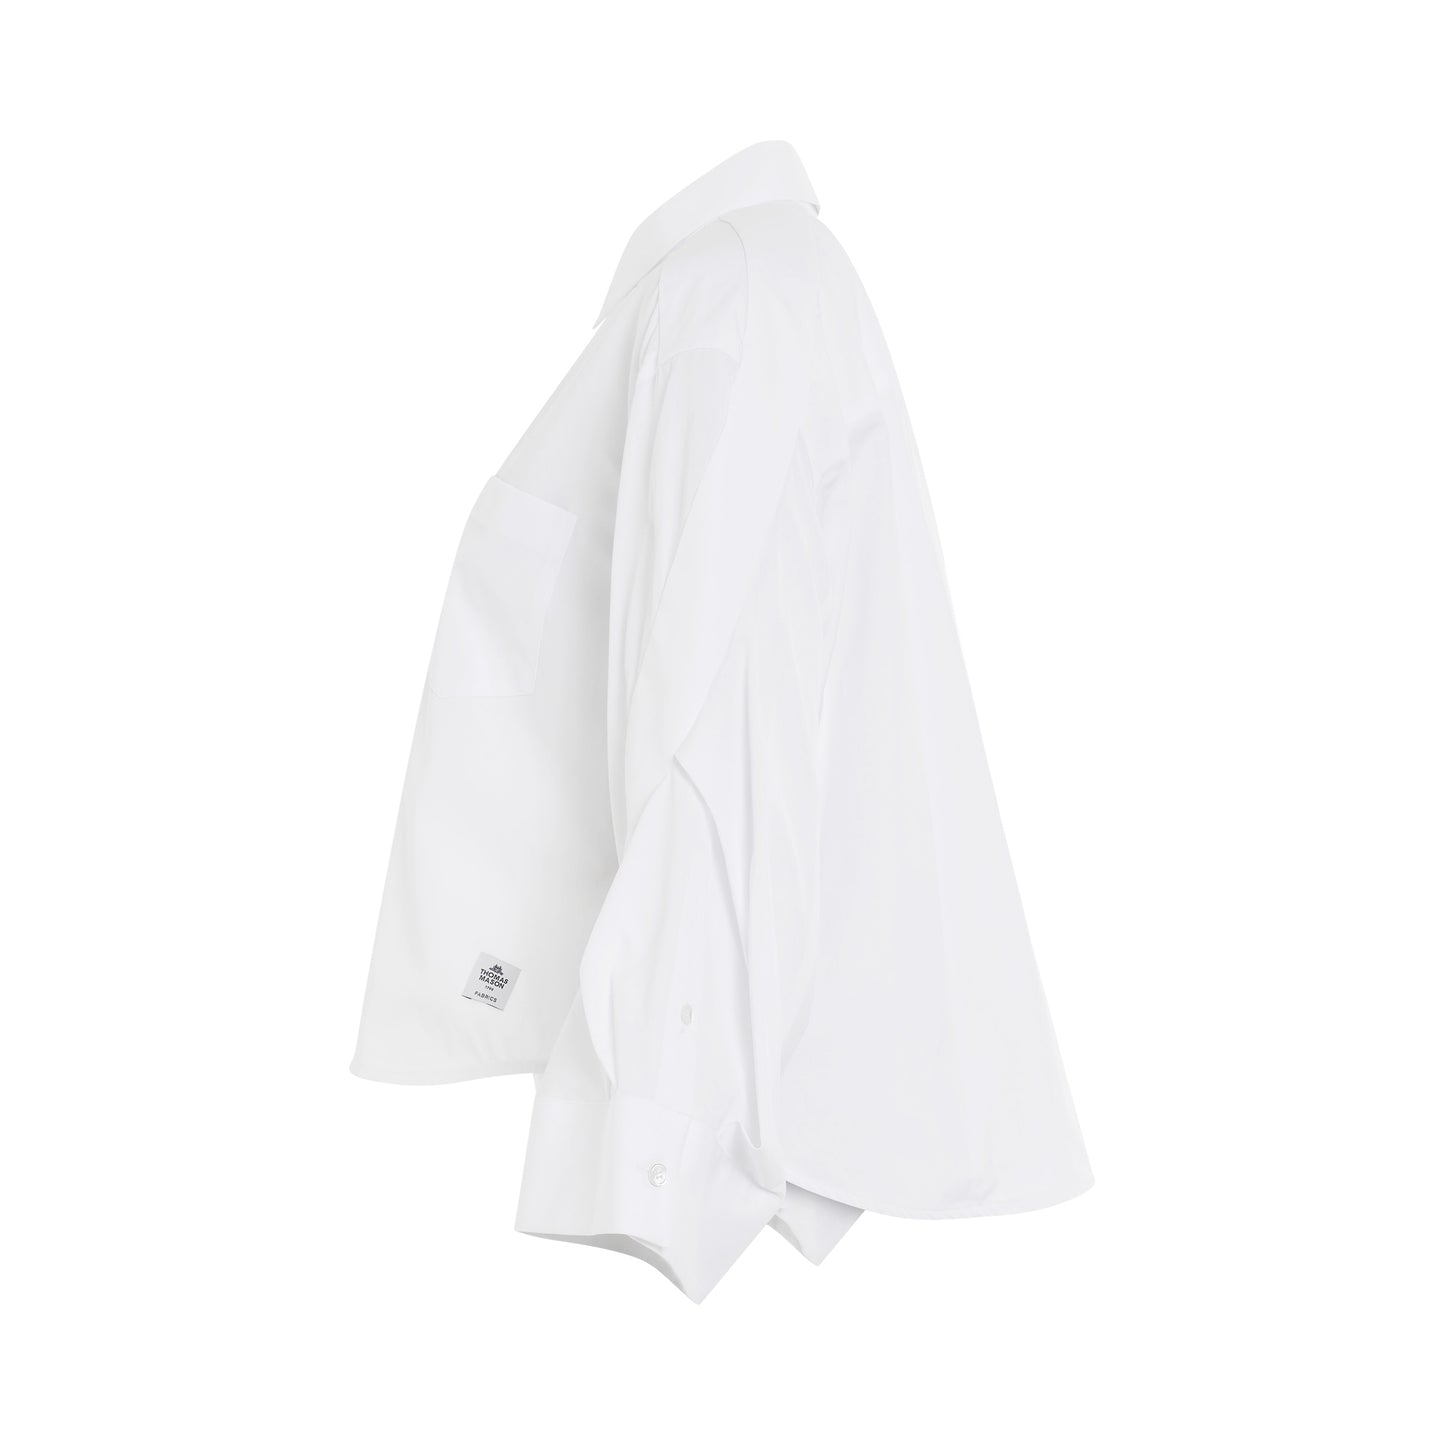 Thomas Mason Cotton Poplin Shirt in Off White